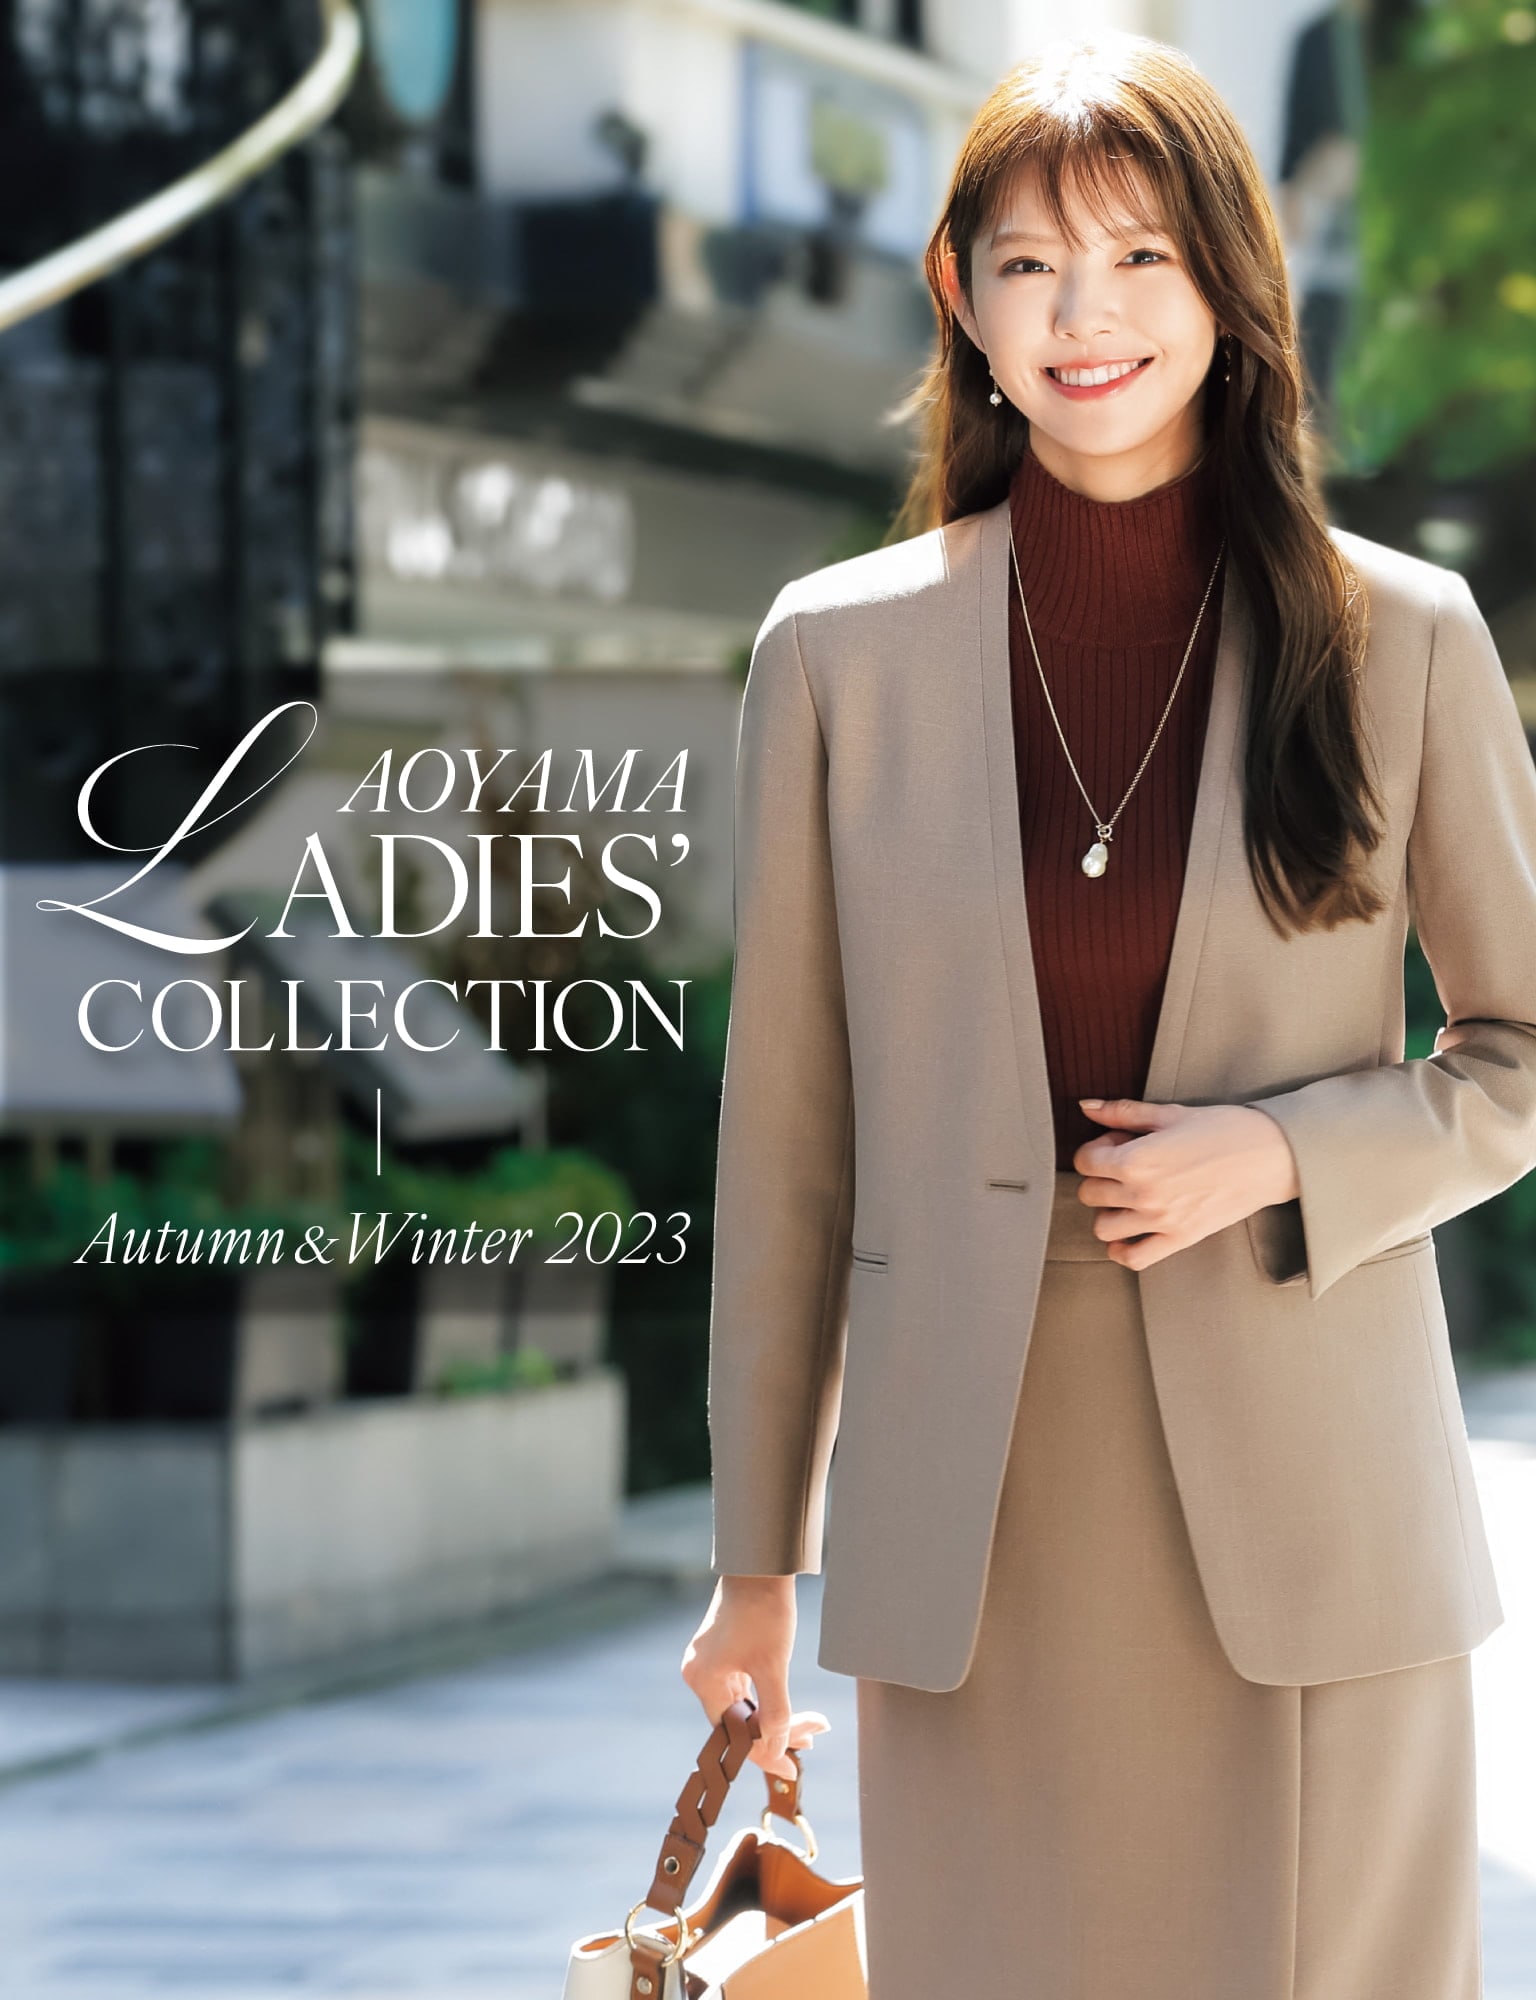 AOYAMA LADIES' COLLECTION Autumn&Winter 2023 | 紳士服・スーツ販売